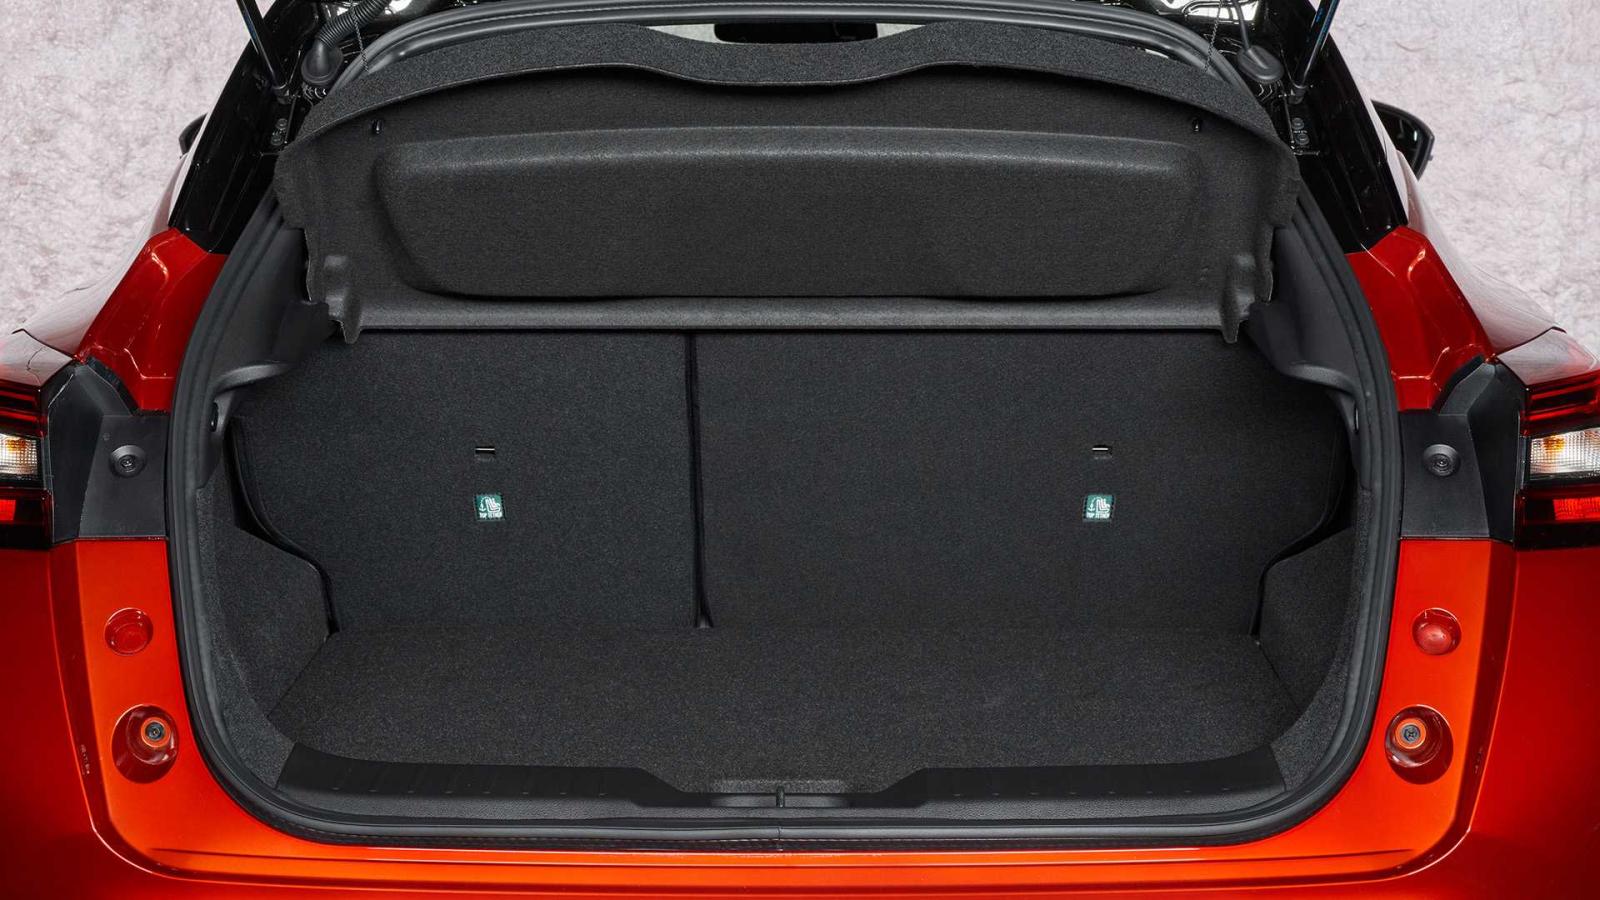 Khoang hành lý xe Nissan Juke 2020 - ảnh 1